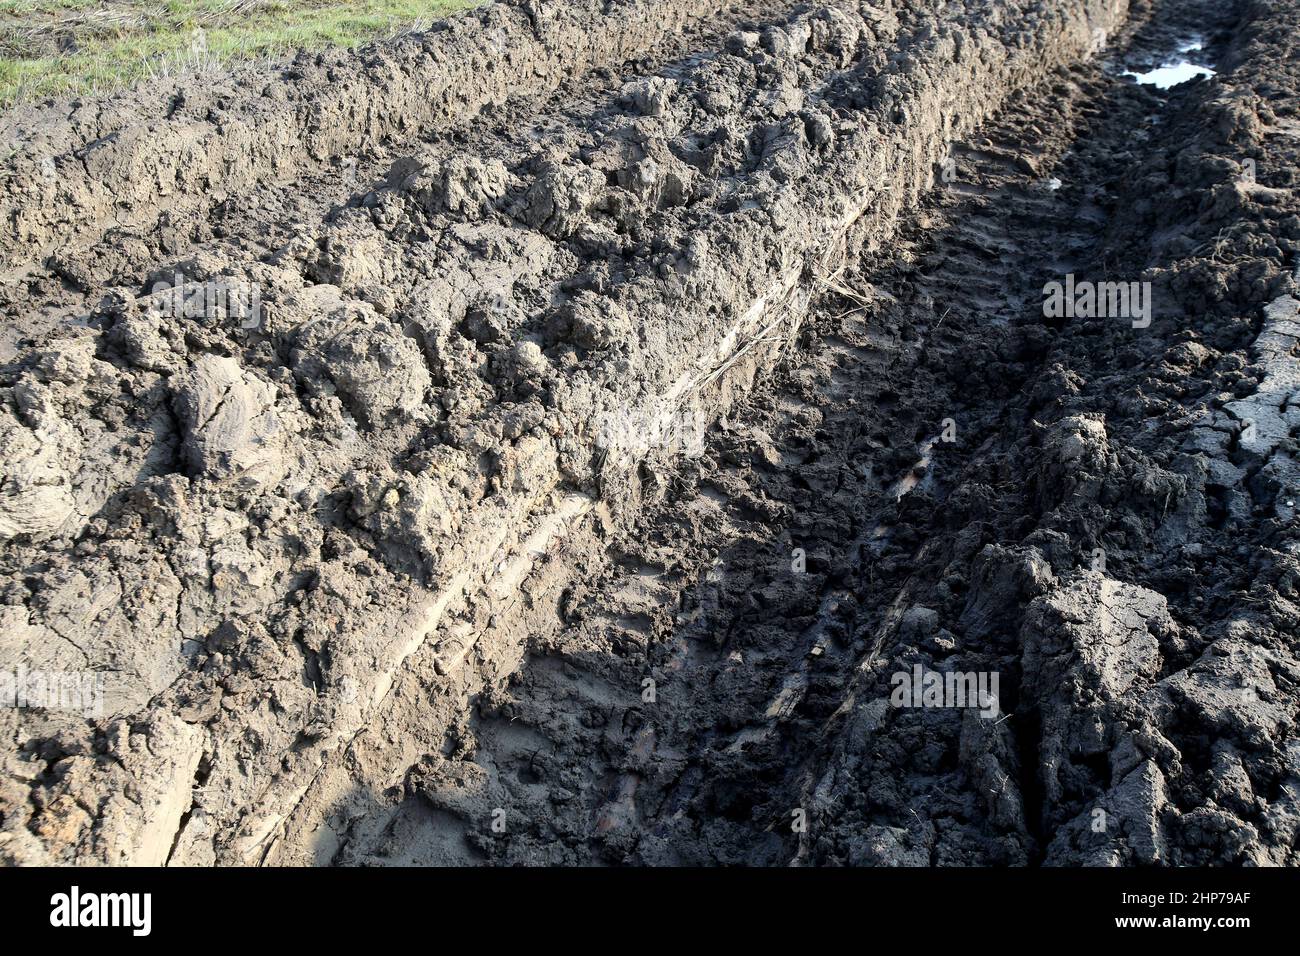 Der Traktor fährt auf nassem Untergrund. Beschädigte Felder, die von Landwirten angebaut werden Stockfoto